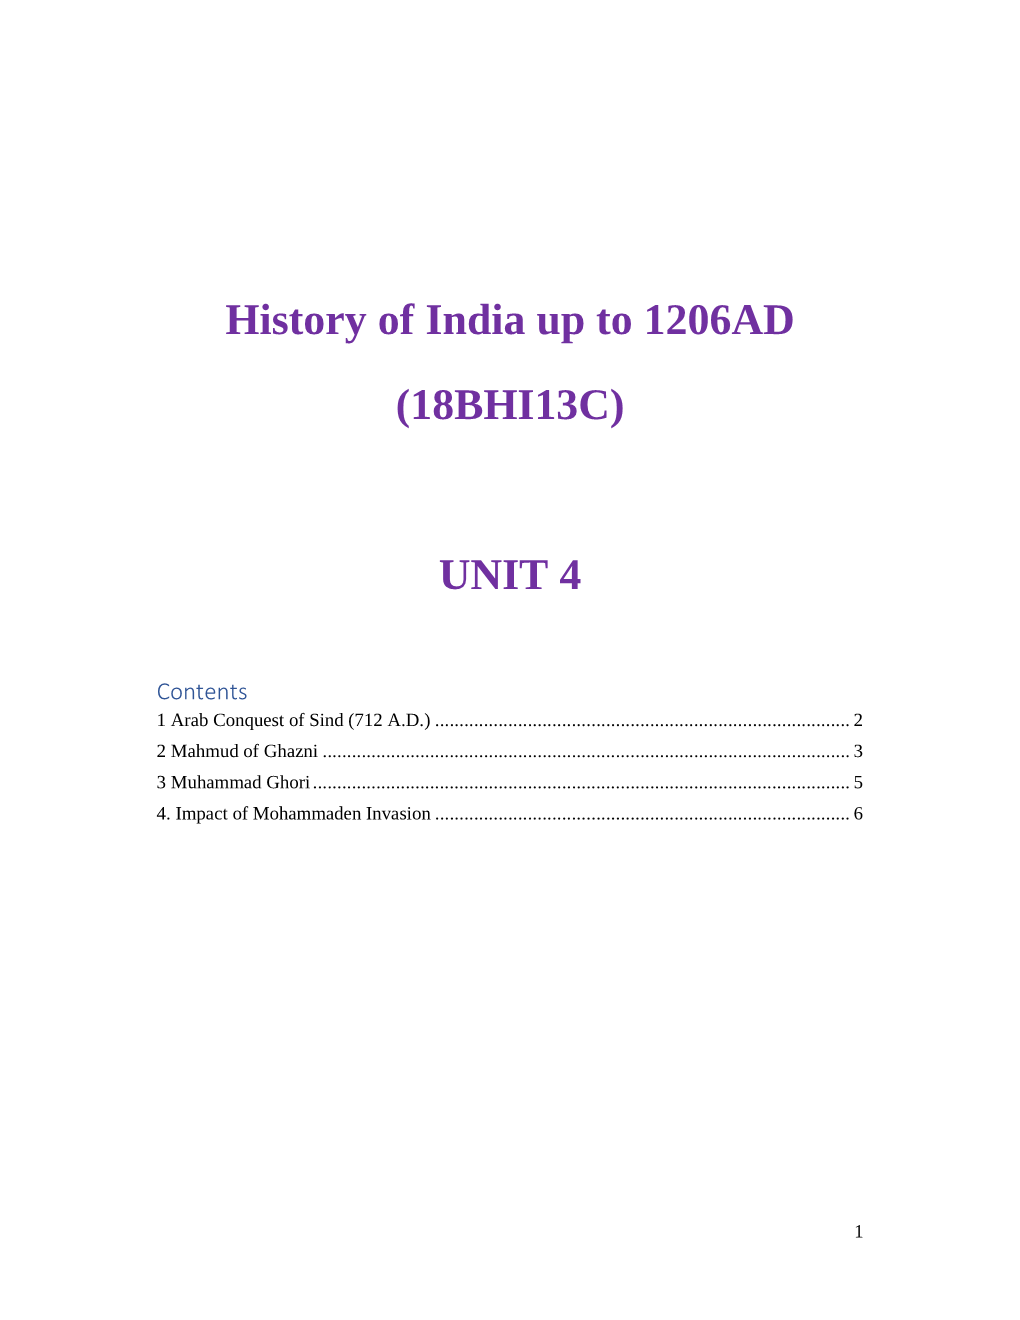 History of India up to 1206AD (18BHI13C) UNIT 4